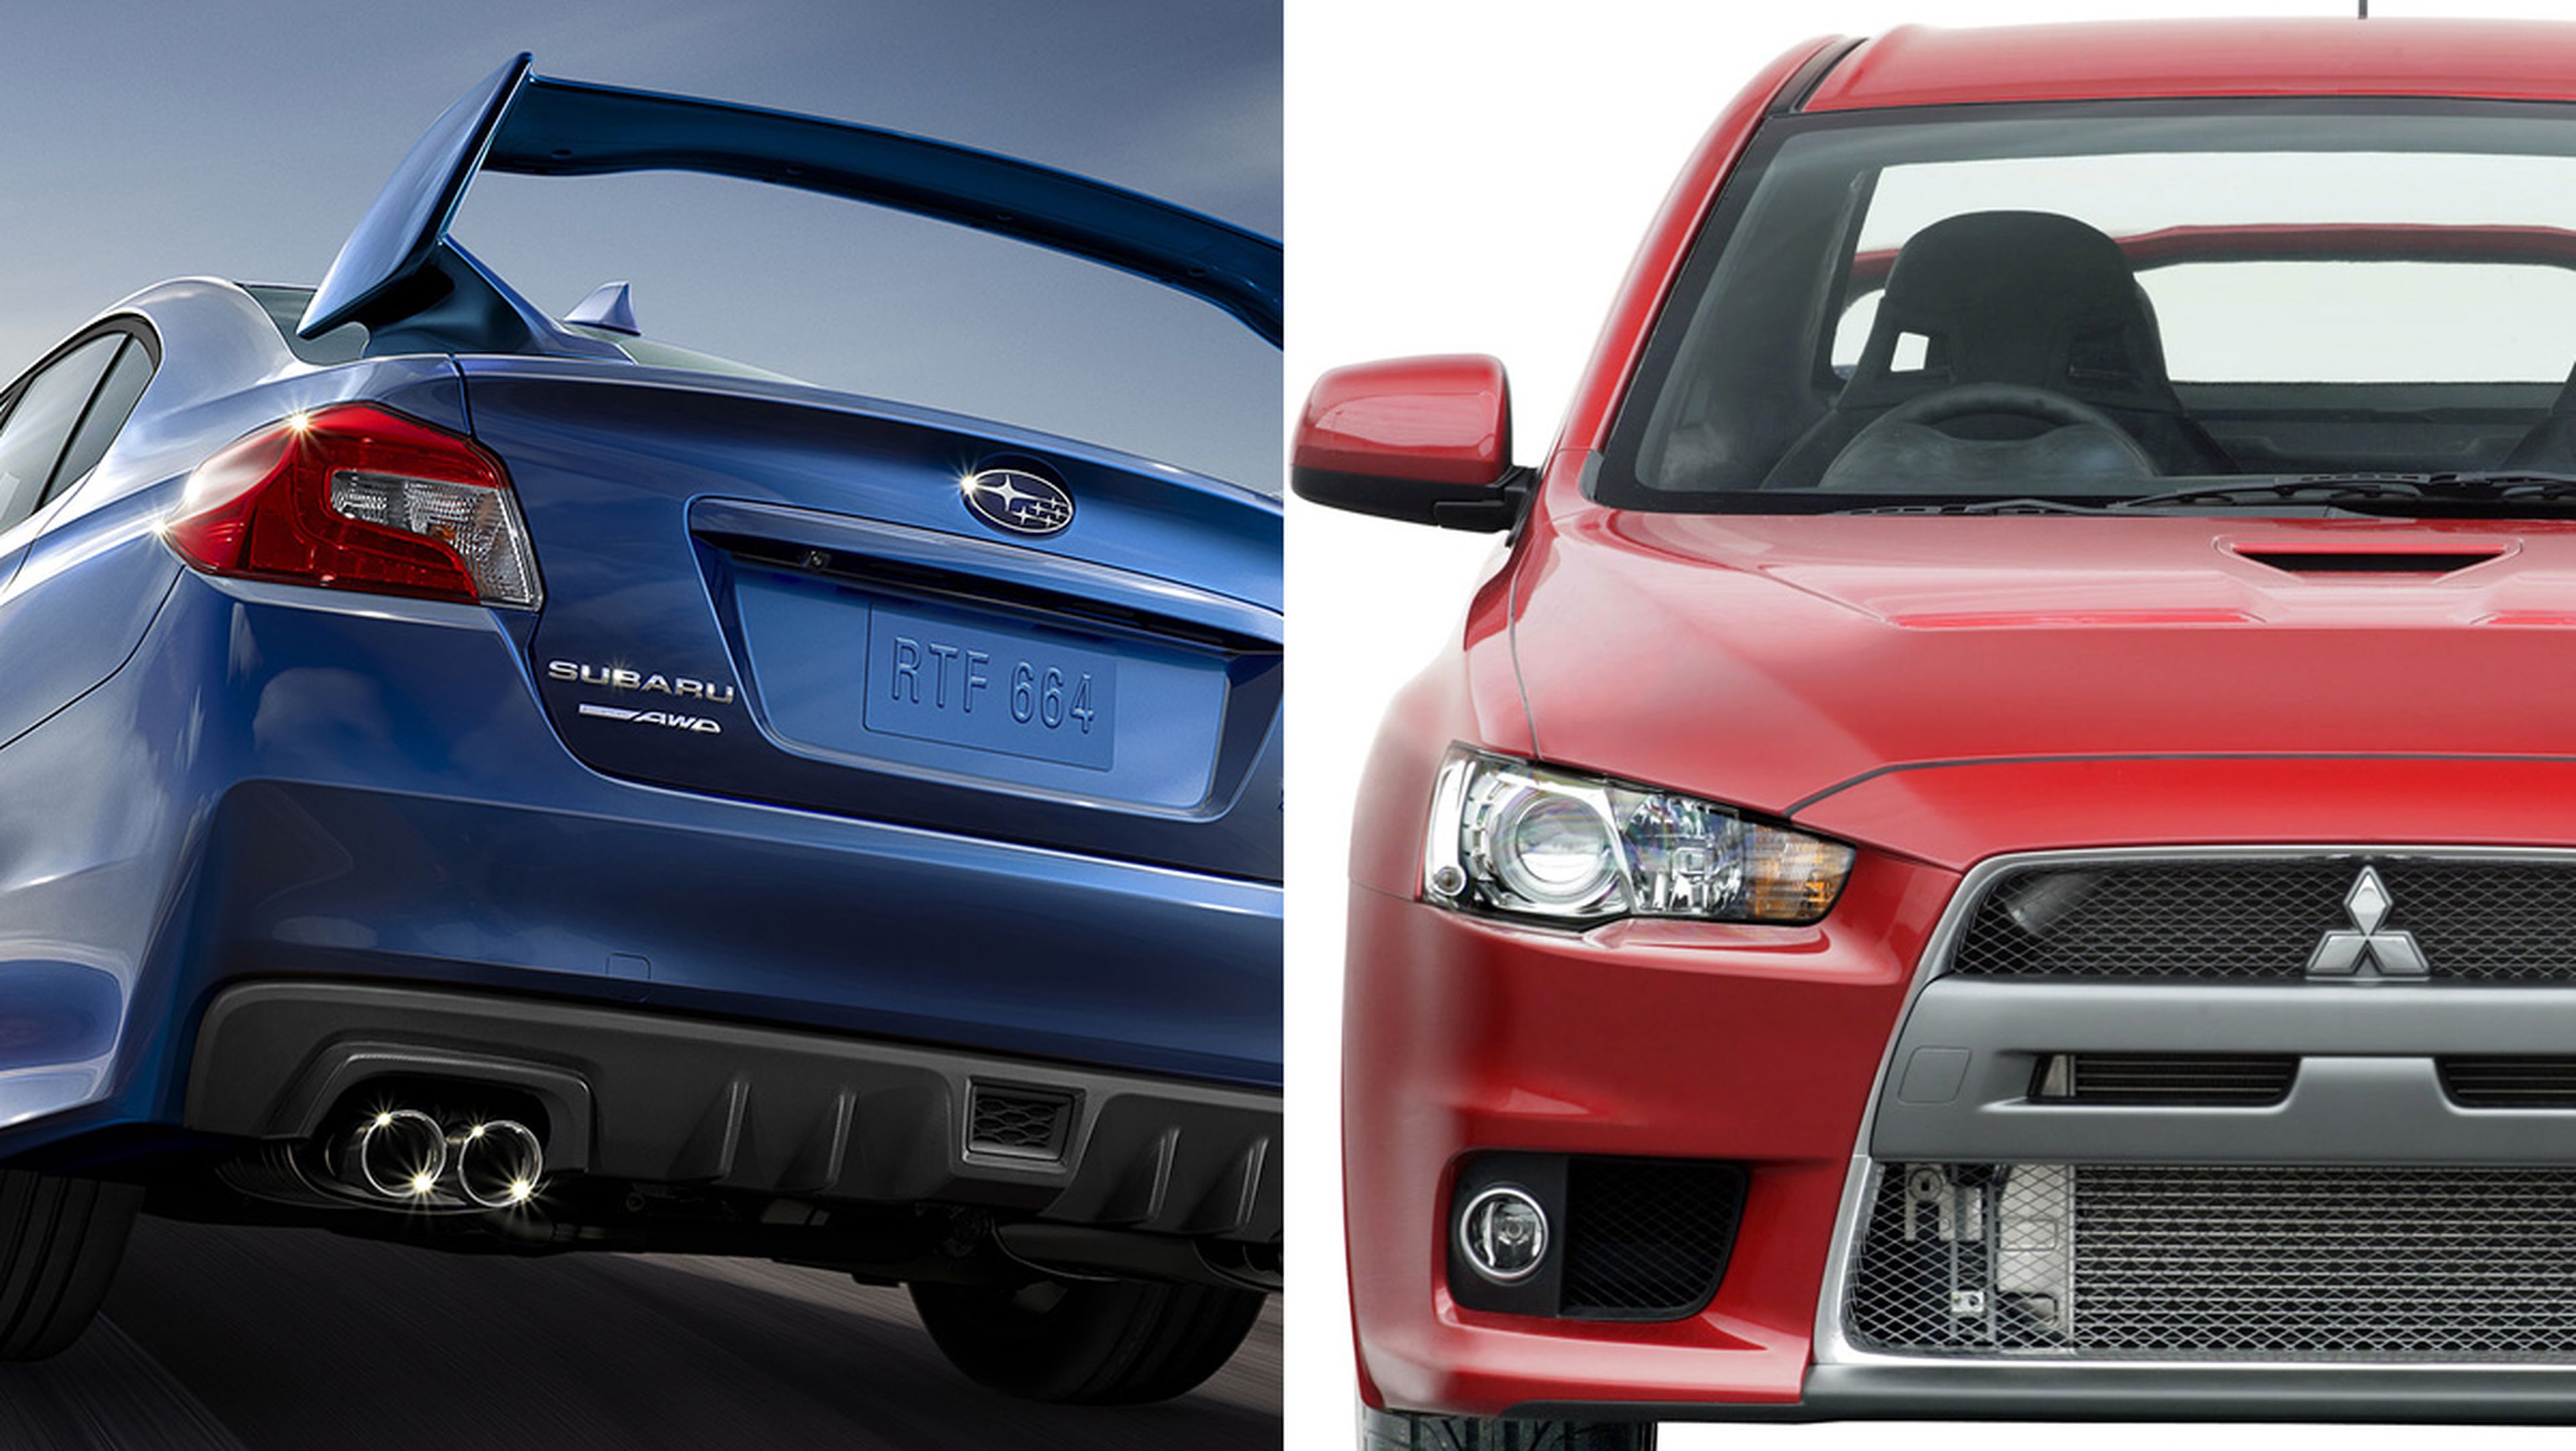 ¿Mitsubishi Lancer o Subaru Impreza?